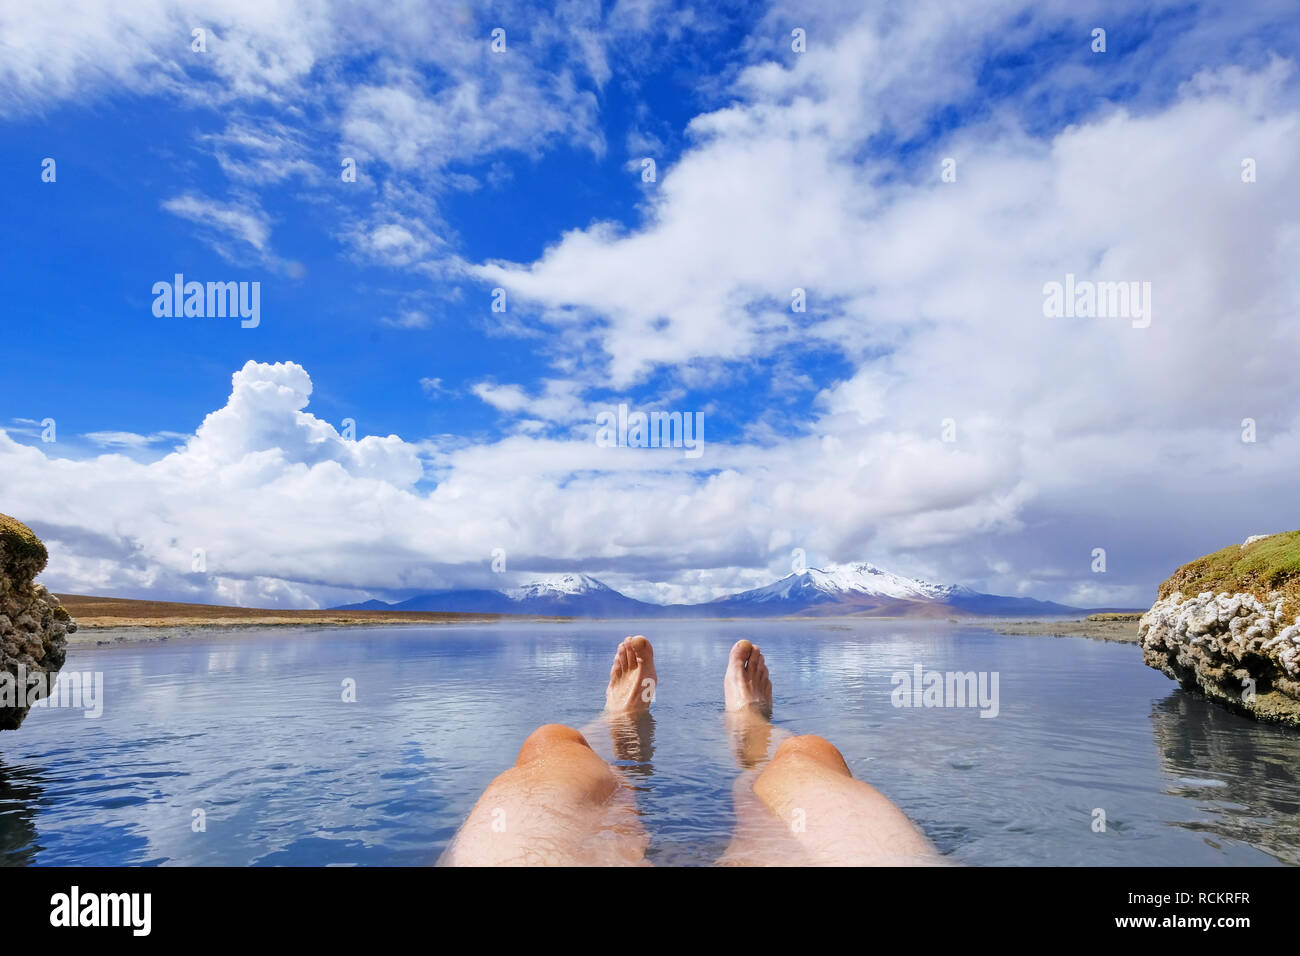 Les jambes d'un homme athlétique en thermique naturel Hot spring Polloquere Salar de Surire, salt lake, Parc National du Volcan Isluga, Chili Banque D'Images